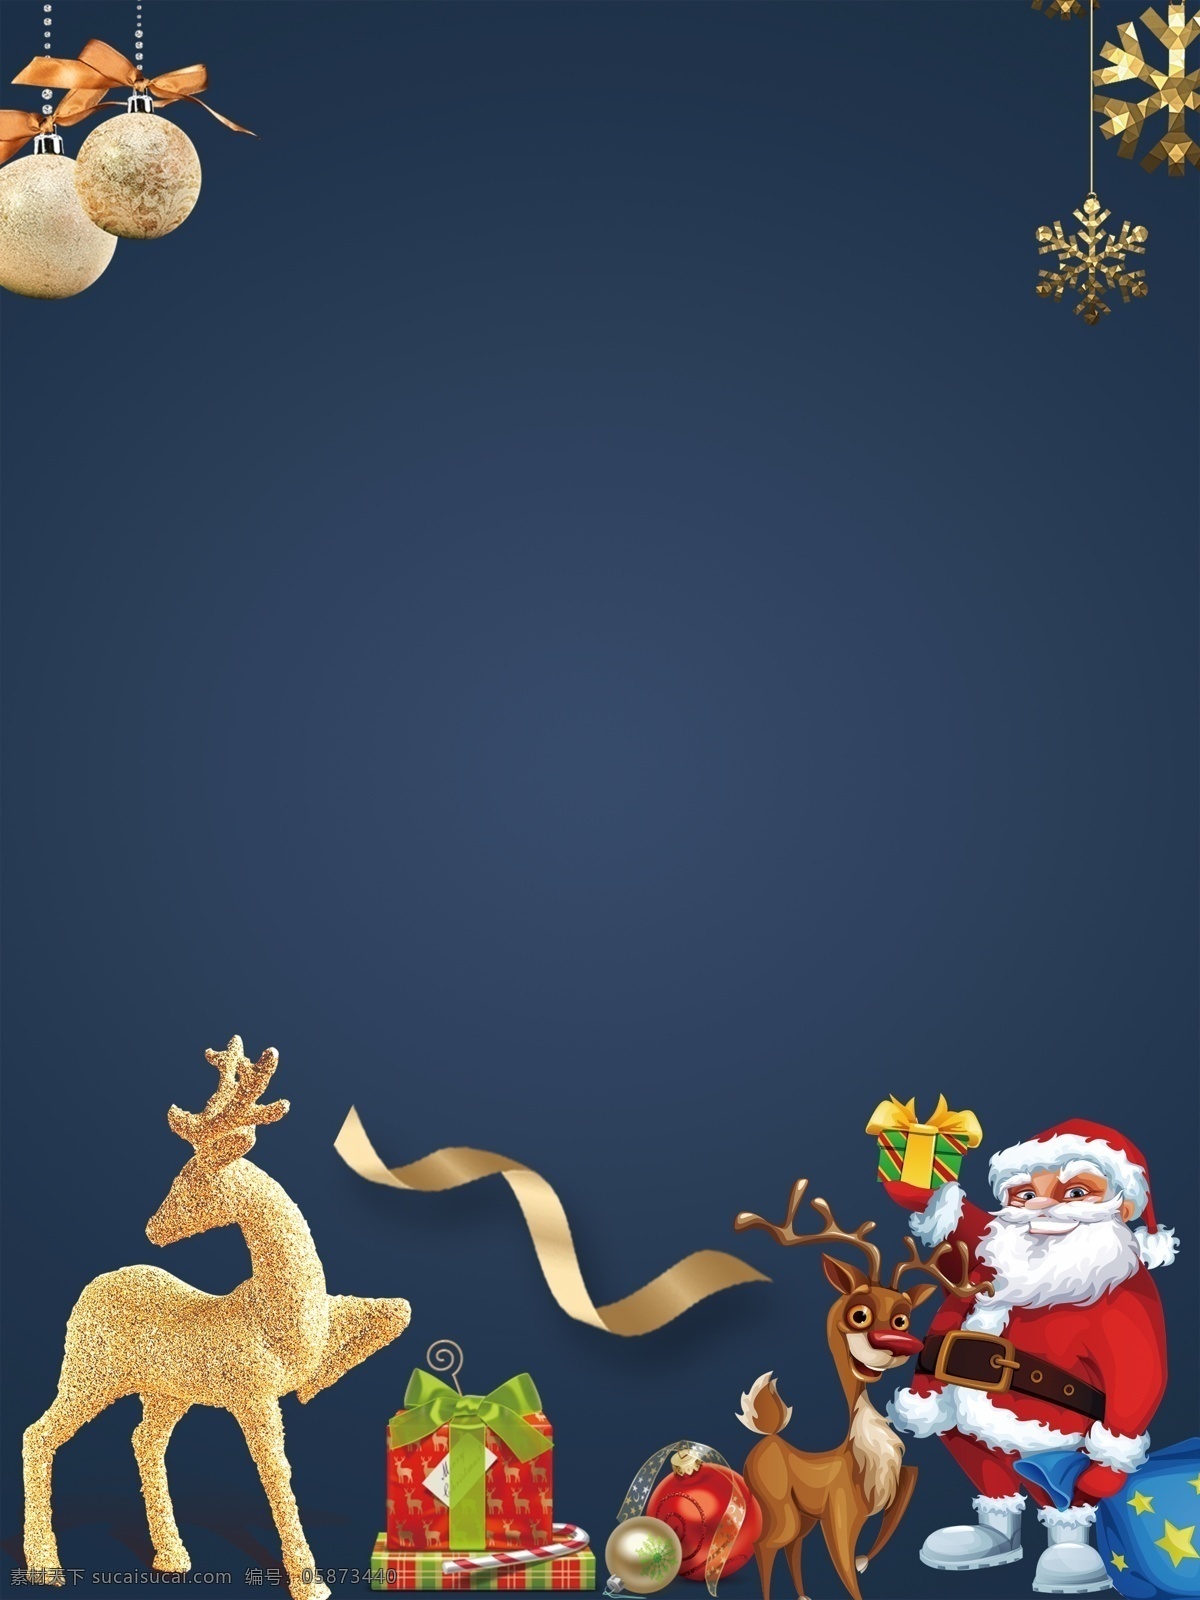 简约 金 麋鹿 圣诞节 背景 蓝色背景 圣诞背景 圣诞老人 背景素材 广告背景 金麋鹿 黄色丝带 金色雪花 圣诞礼物 圣诞节背景 圣诞来了 平安夜 圣诞活动背景 节日背景